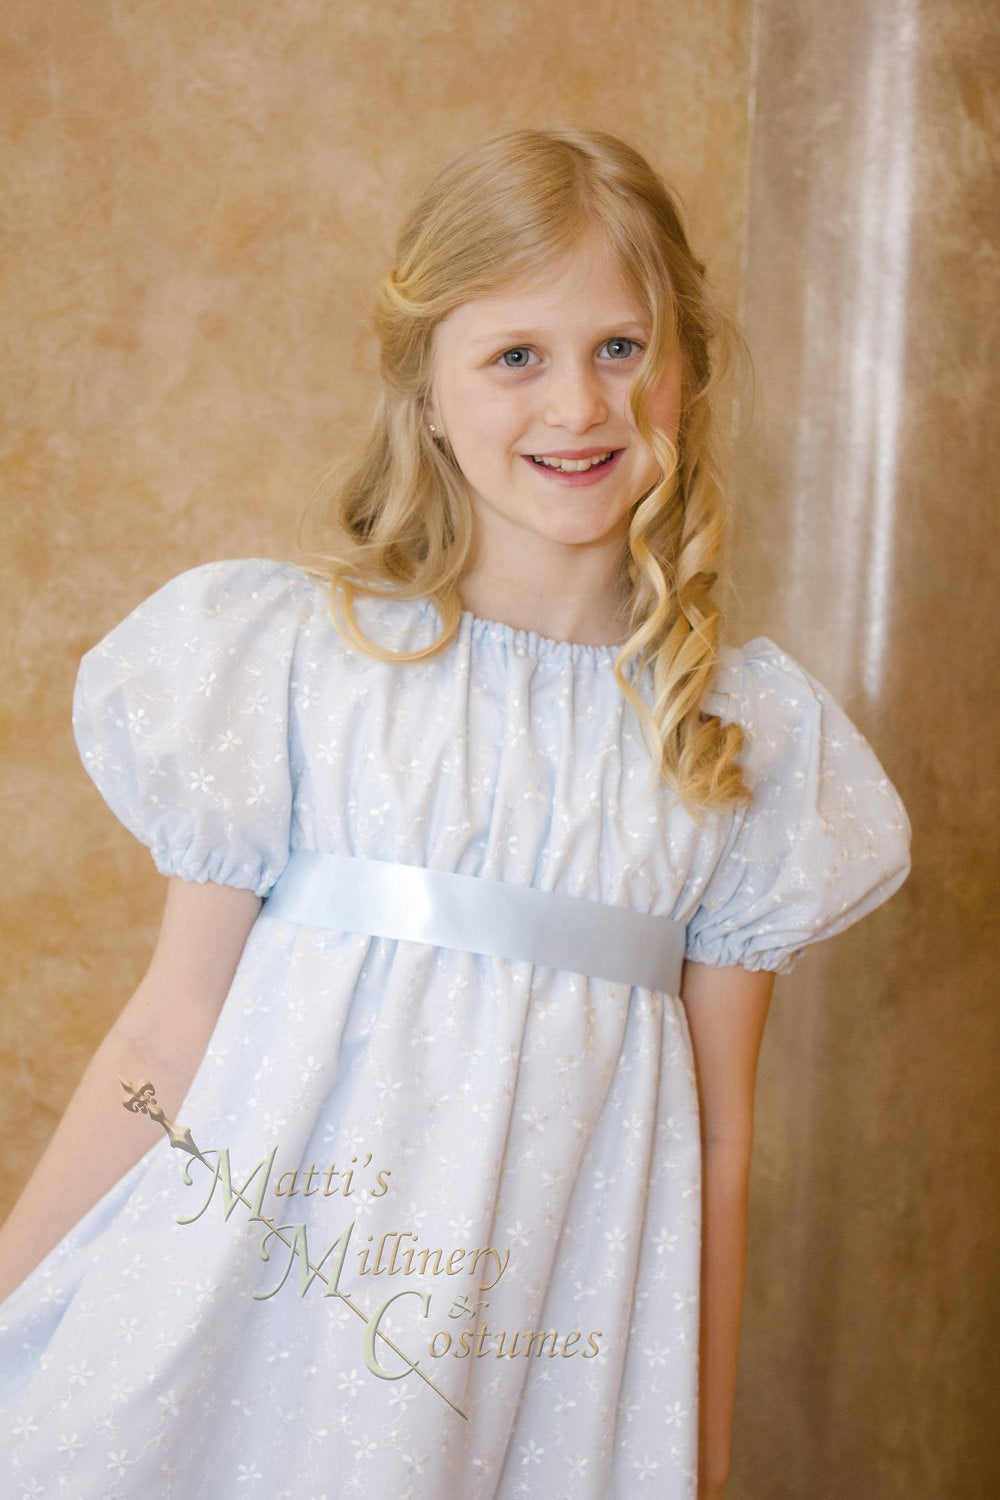 Eyelet Regency Jane Austen Girl Childrens Ball Gown Dress CUSTOM your color choice